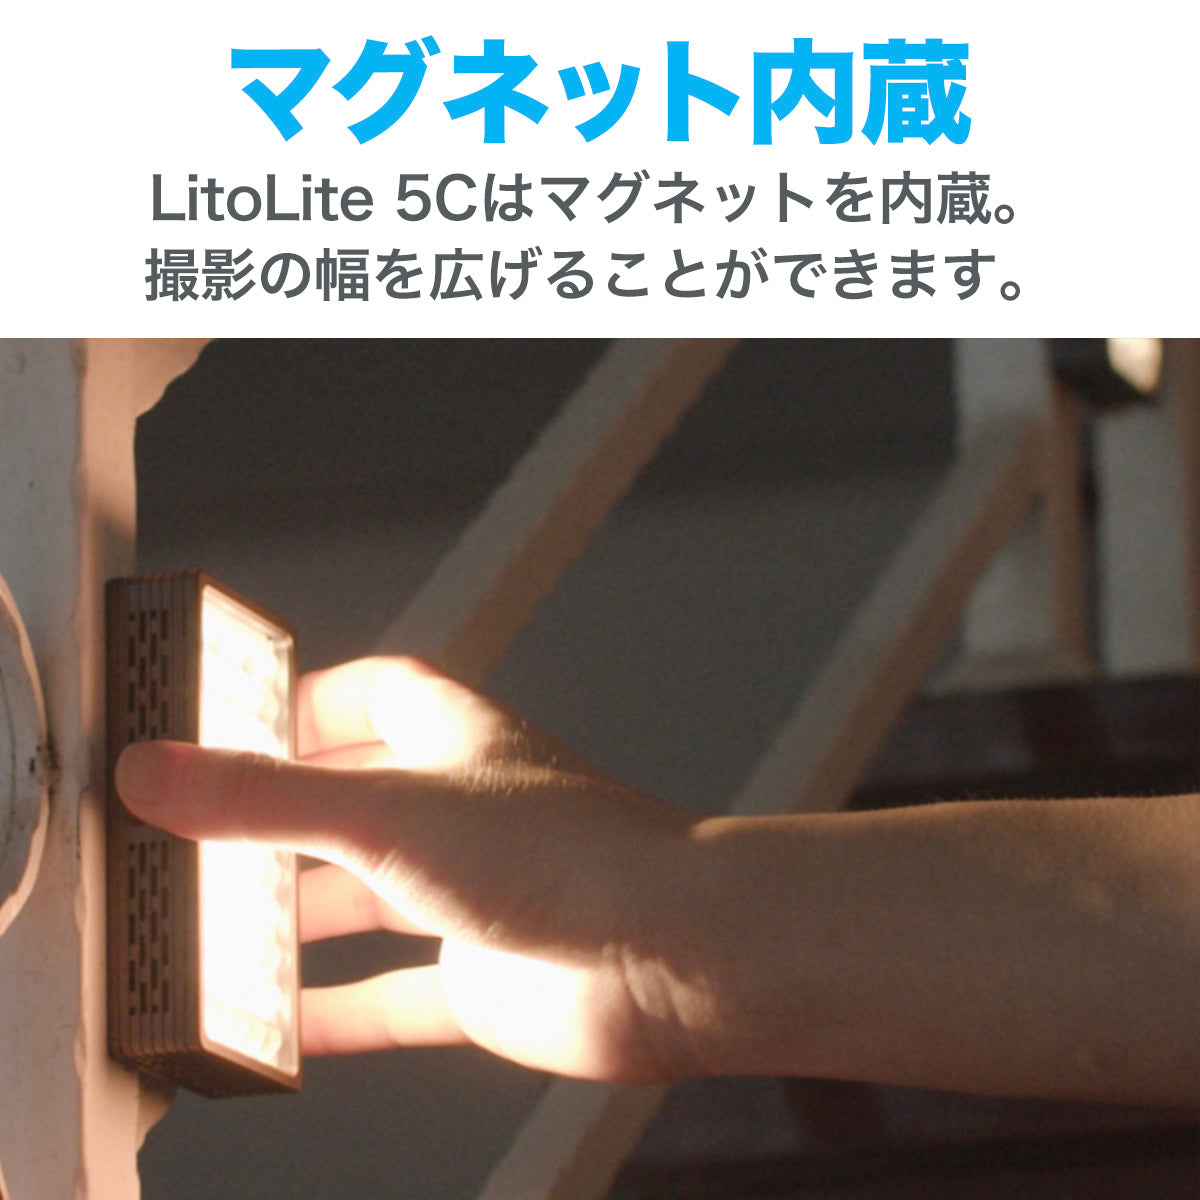 ◎絶版◎NANLITE LitoLite 5C 撮影用RGBライト 定常光ライト